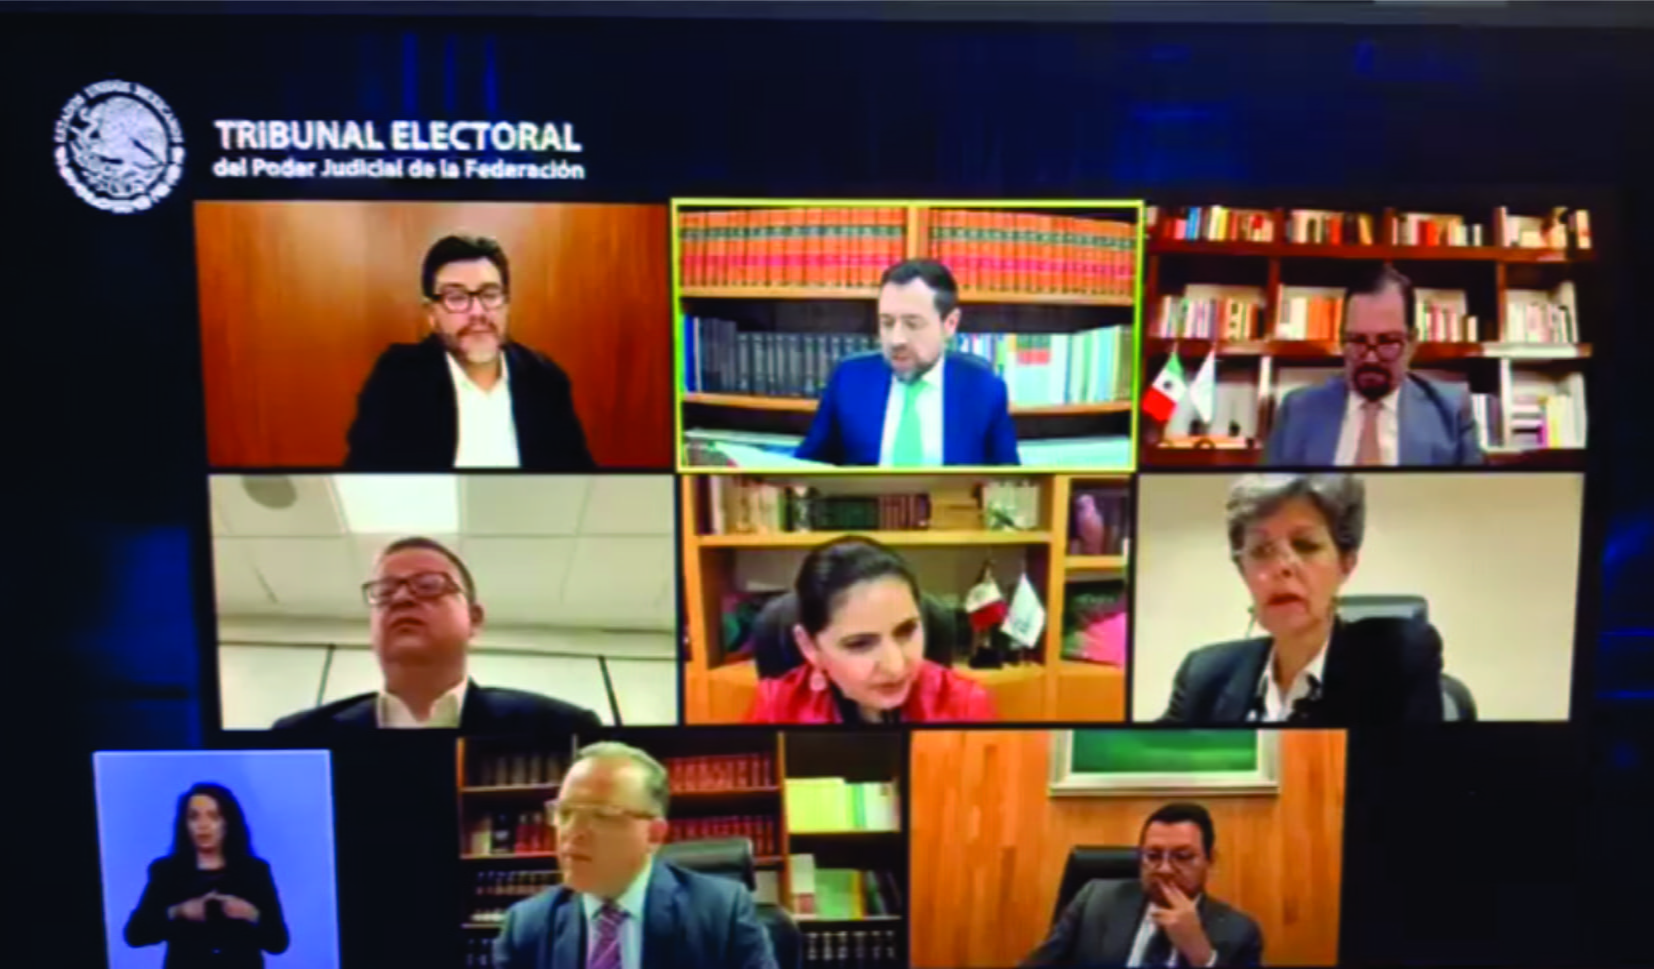 Anulan elección en Tlaquepaque, se tendrá proceso electoral extraordinario